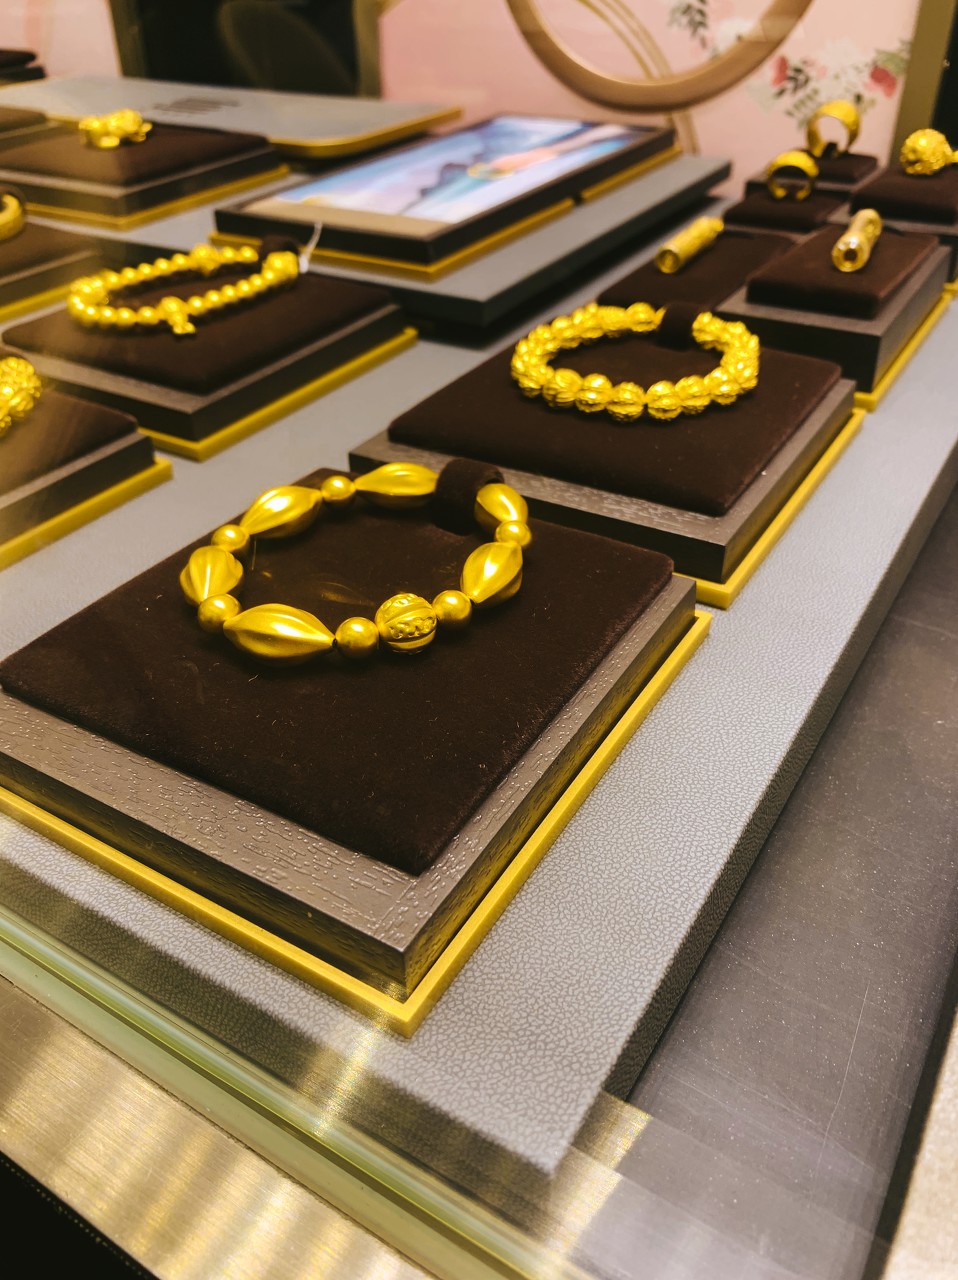 中国珠宝行业的龙头企业周大福 始终注重客户体验与服务